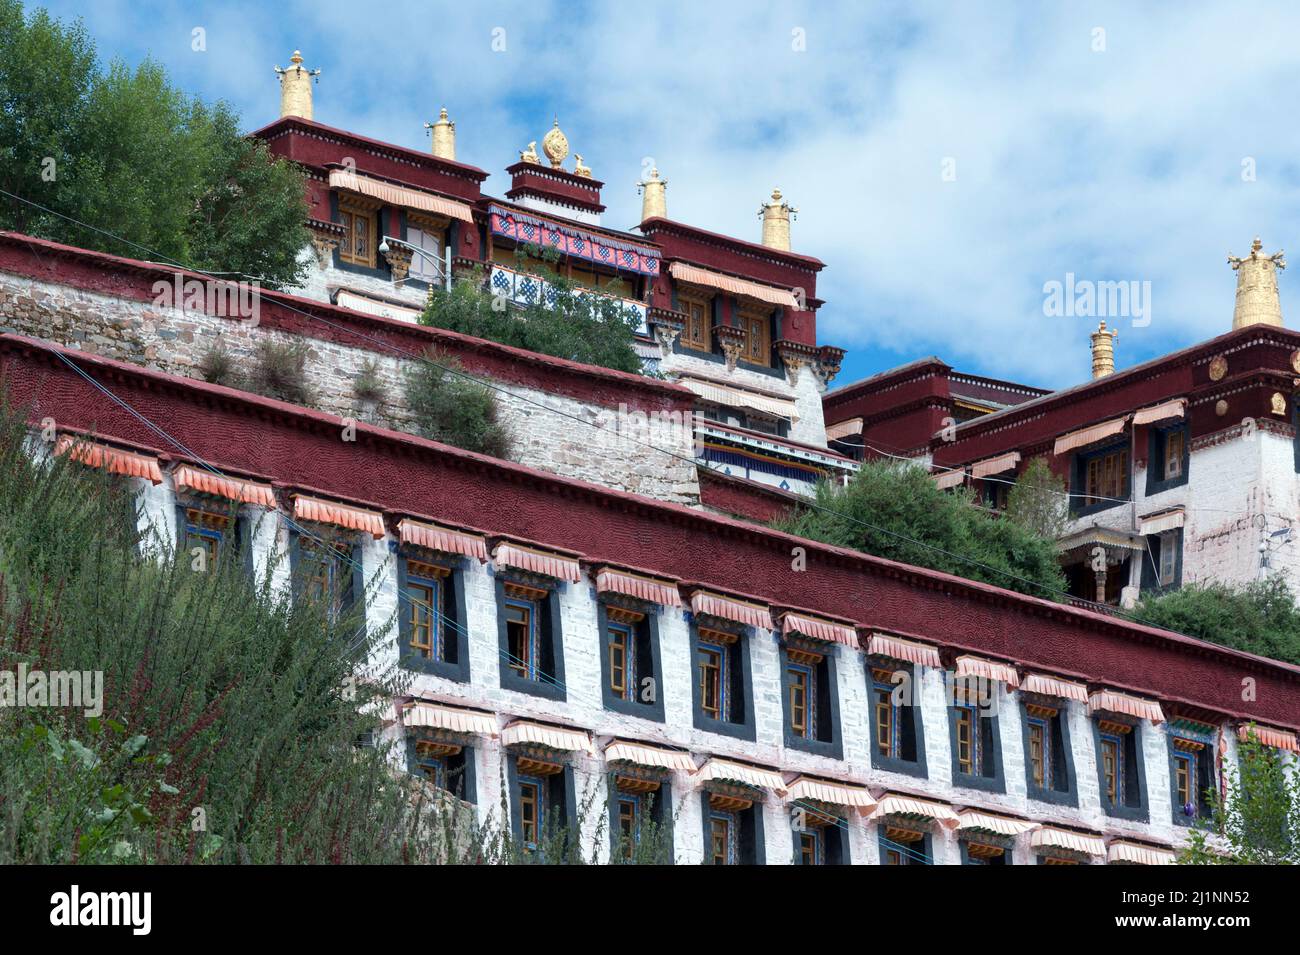 Il monastero di Ganden situato in corrispondenza della sommità del monte Wangbur è uno dei "grandi" tre università Gelug monasteri del Tibet. Foto Stock